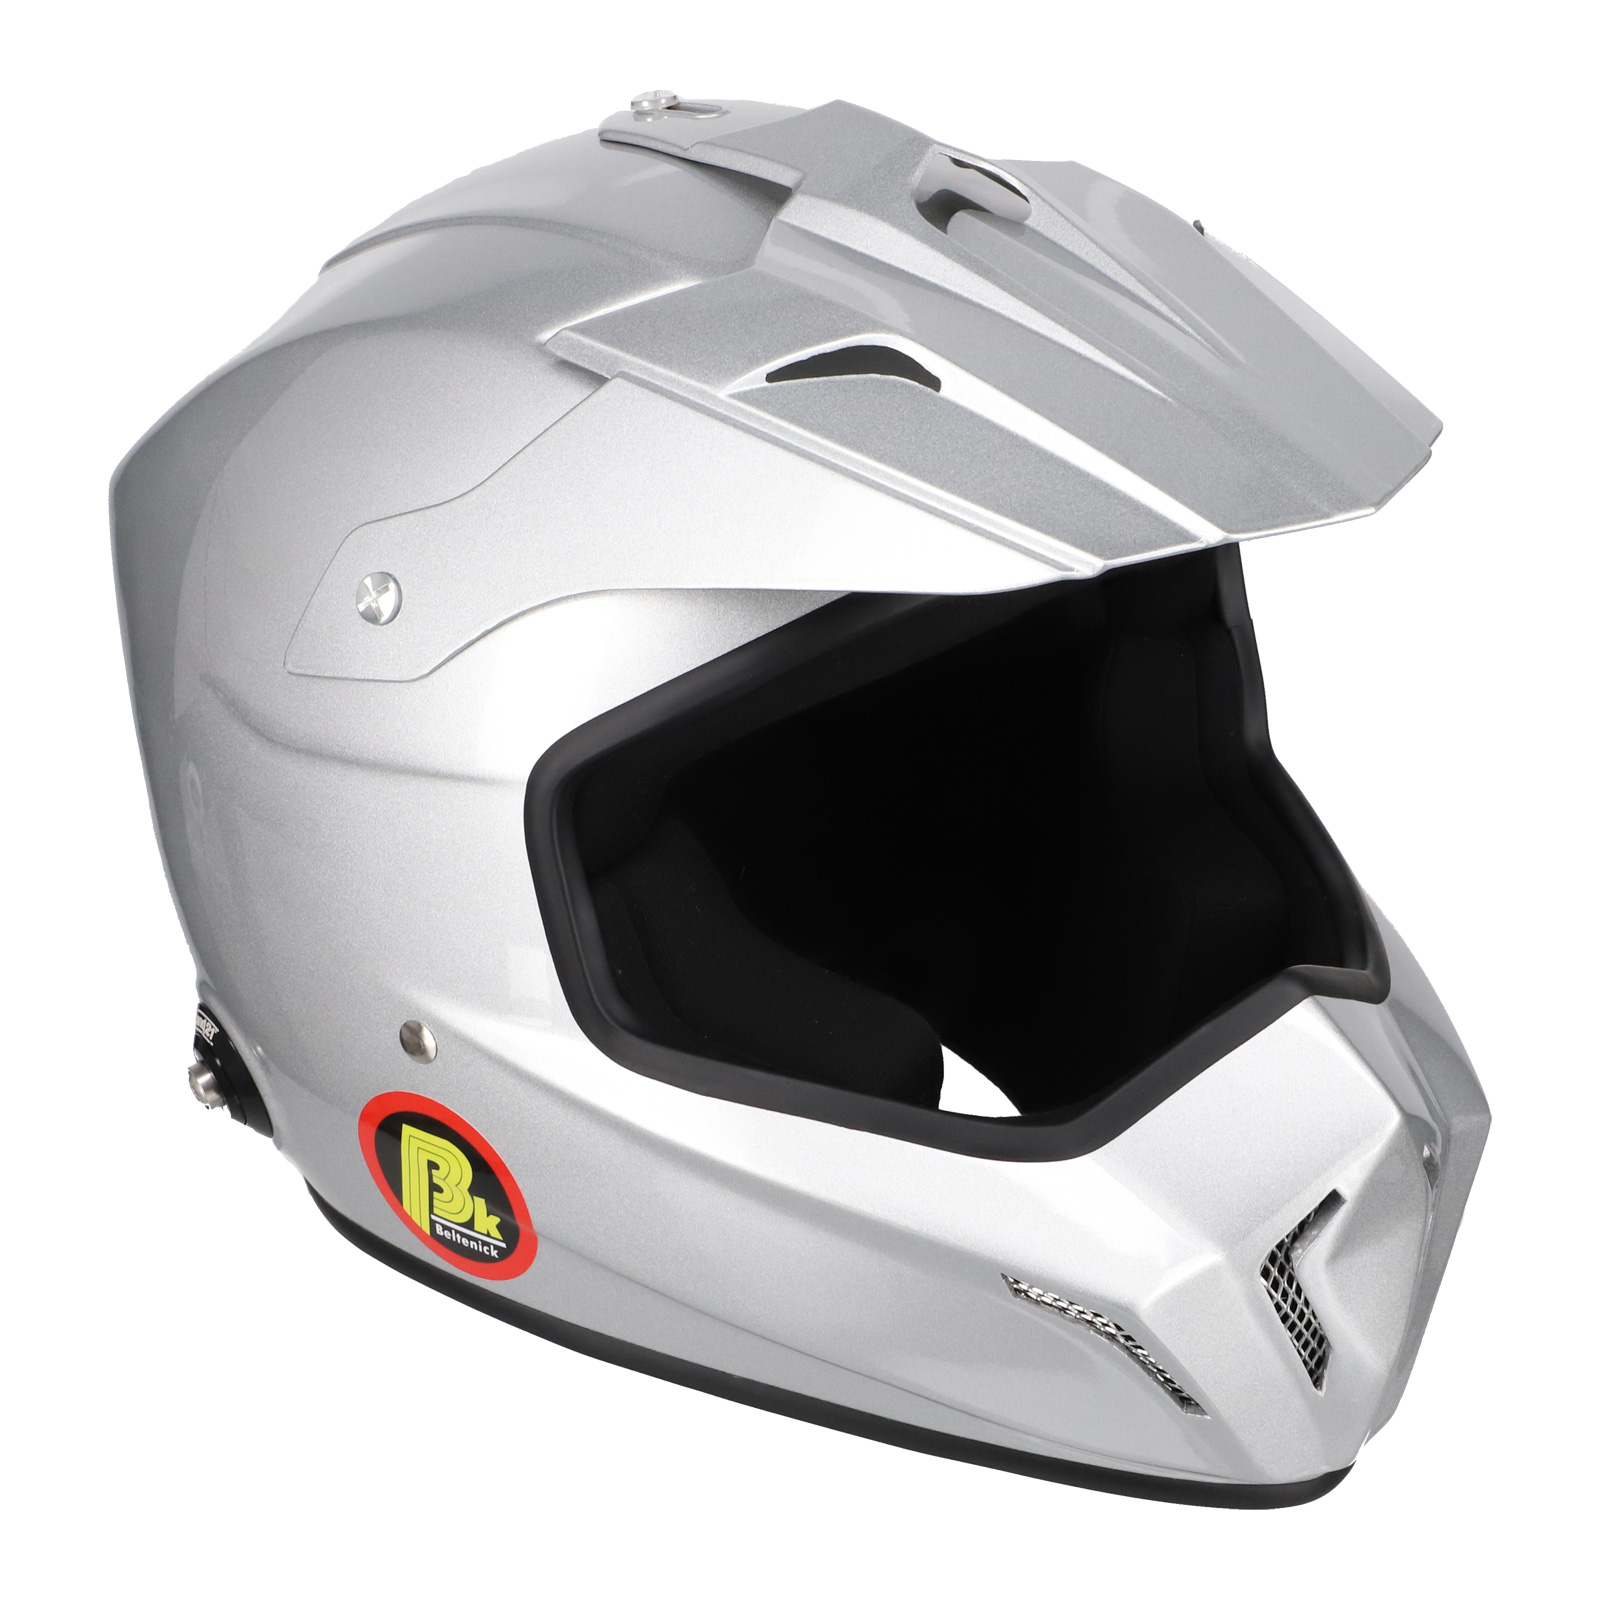 BELTENICK CROSS шлем для автоспорта (под кроссовые очки) (HANS), серебристый, р-р XL - DARK-STOCK.RU